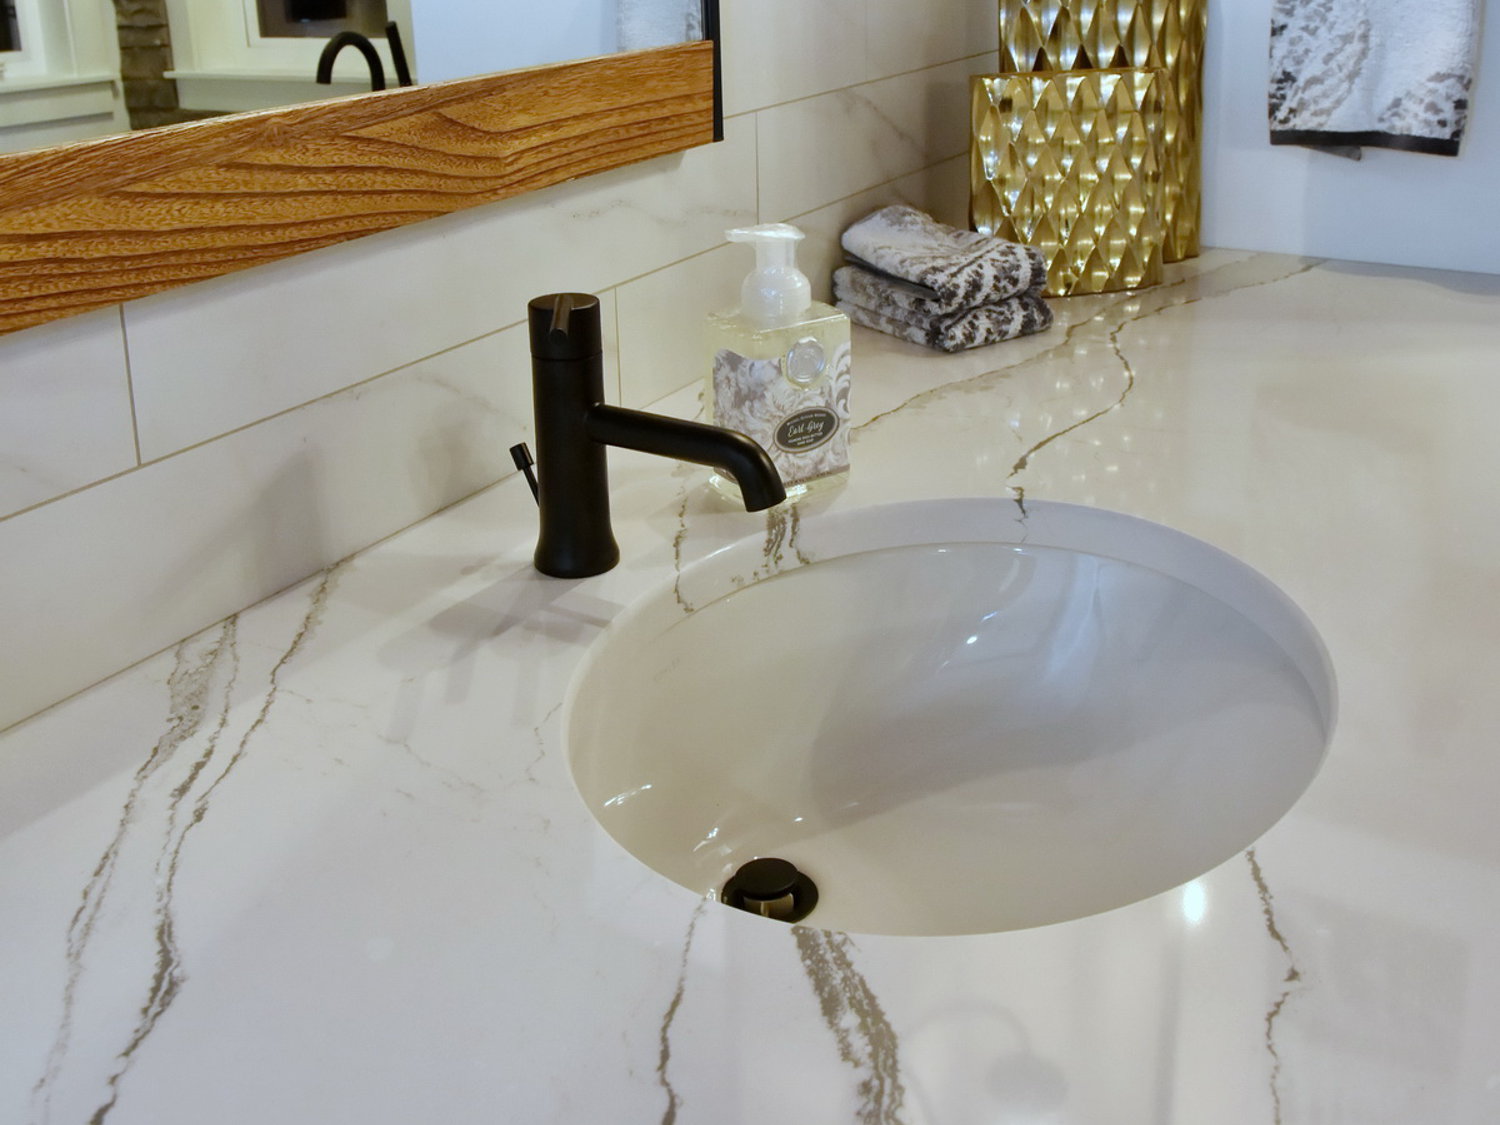 Matte Black Delta Bathroom Faucet, Undermount Sink, Cambria Countertop